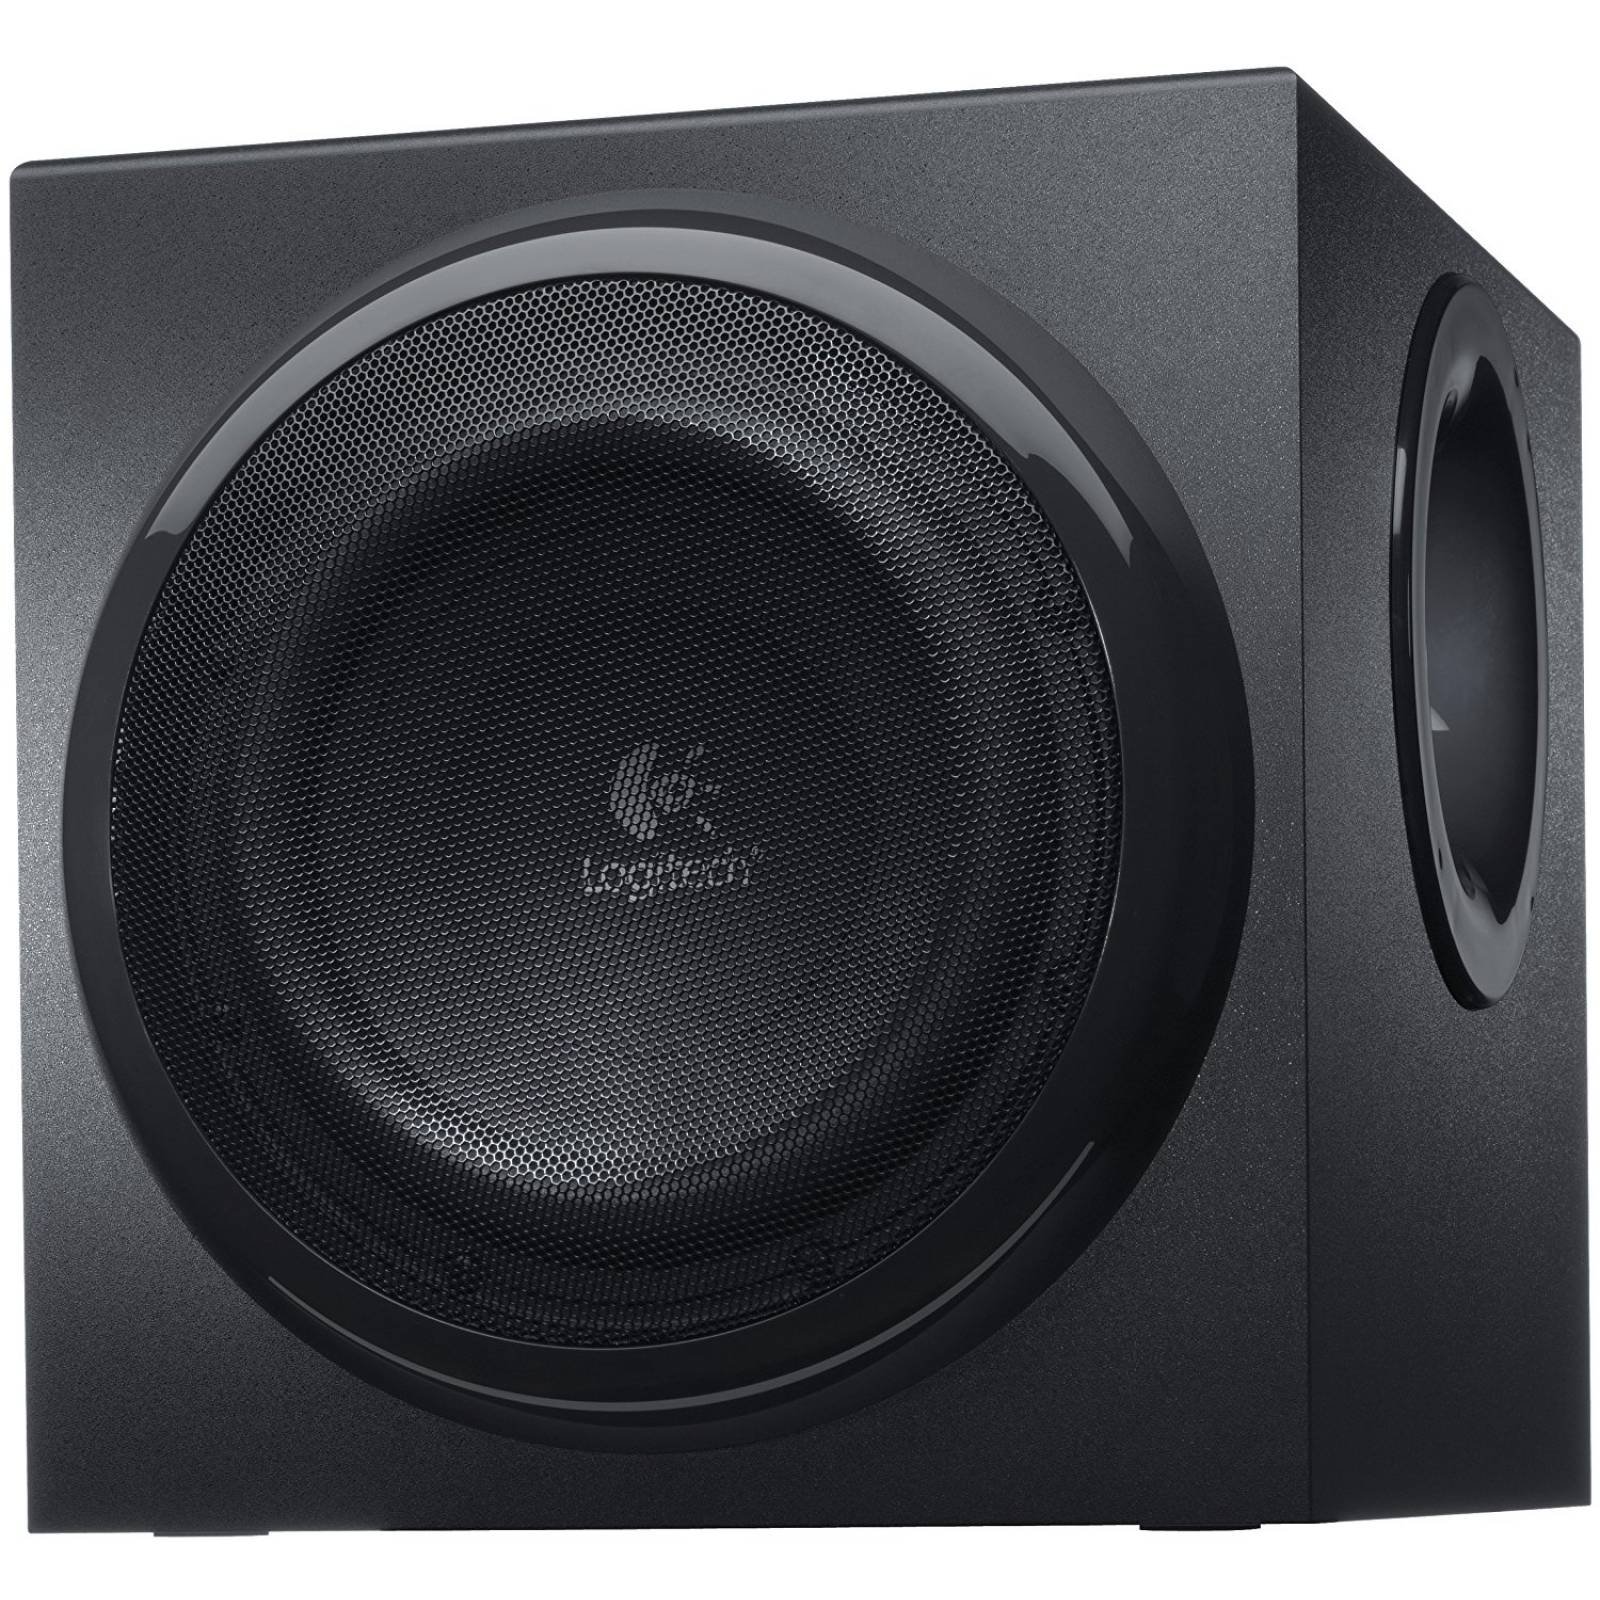 Logitech Z906 Surround Sound Speakers - Negro